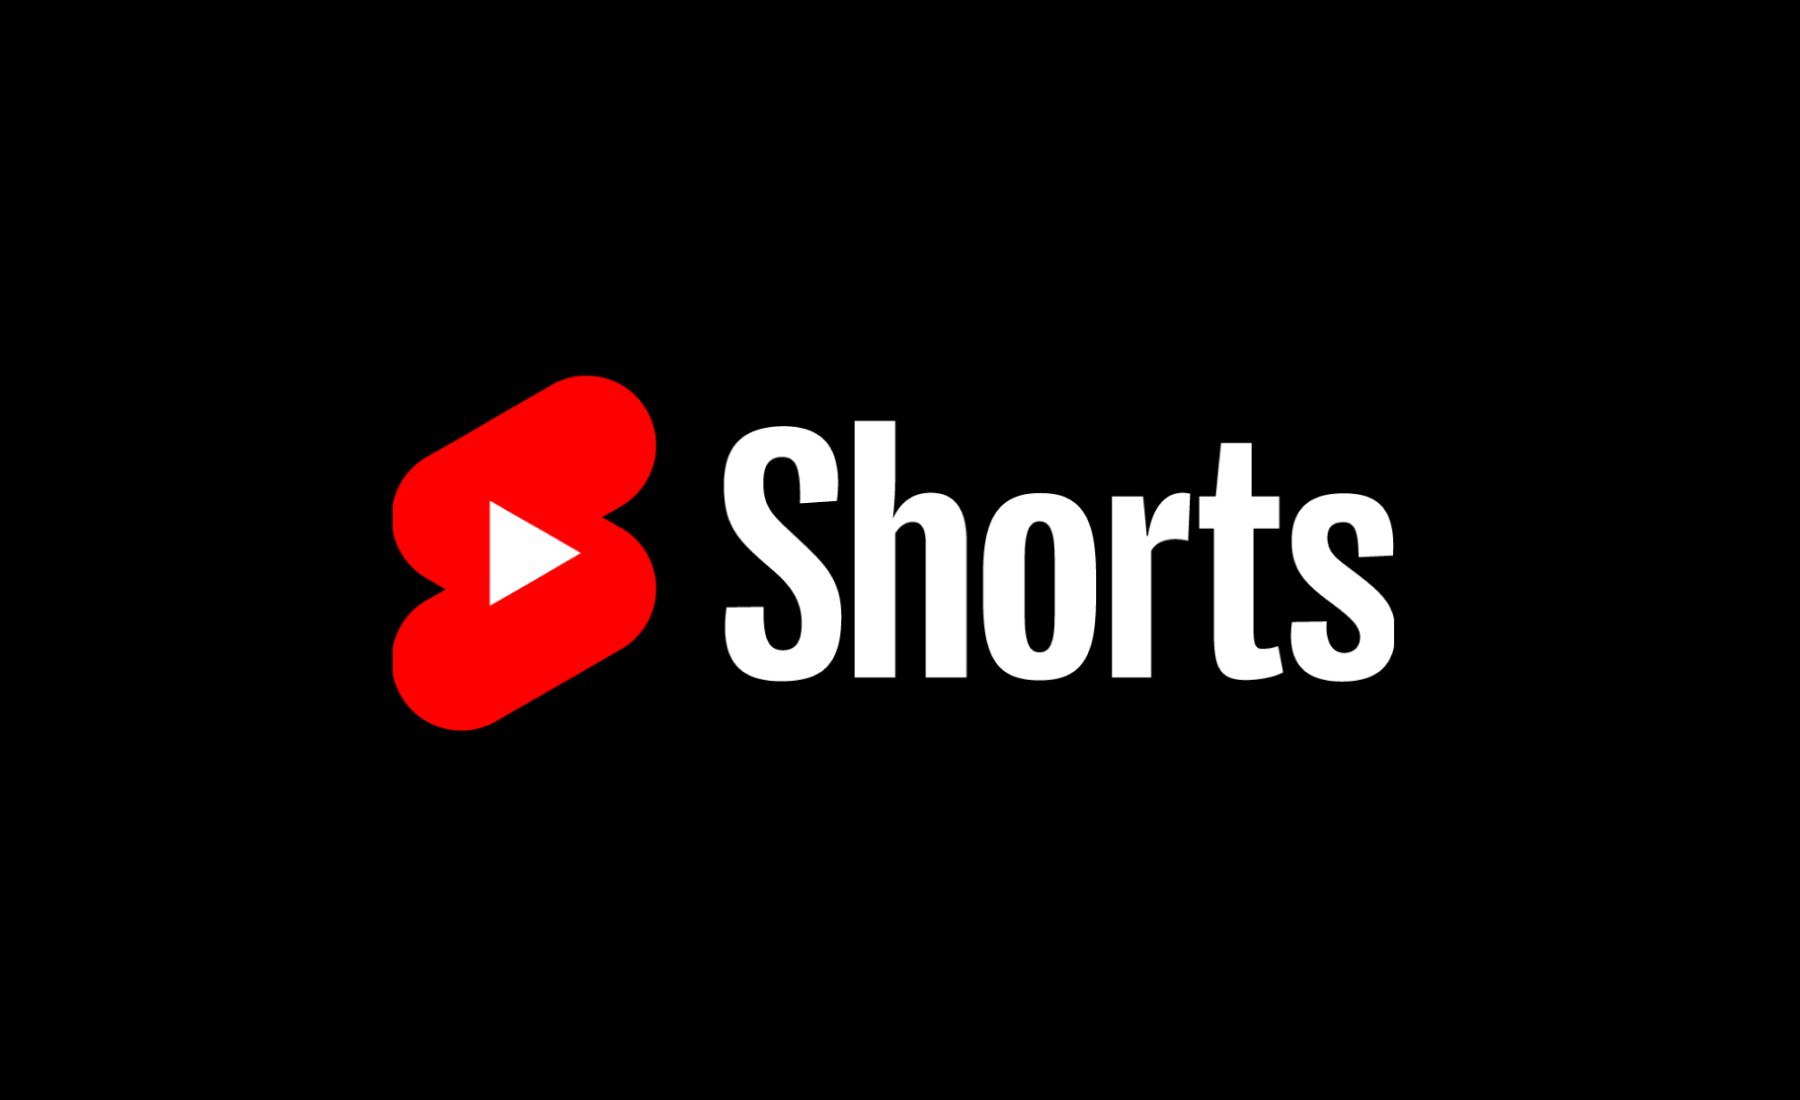 Youtube как сделать short. Youtube shorts. Картинка shorts youtube. Youtube shorts logo. Шортс видео ютуб.